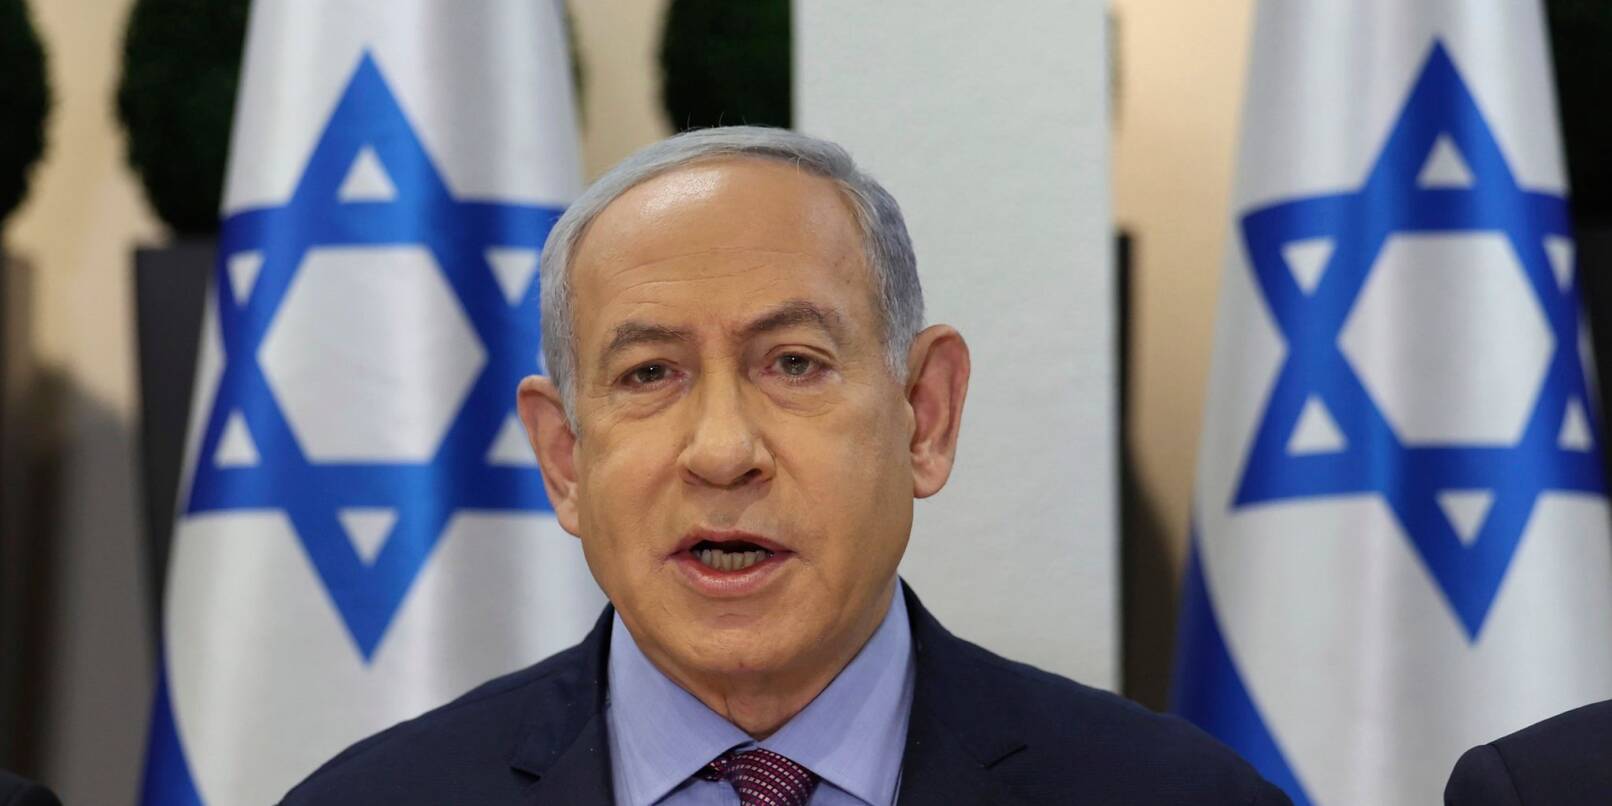 Benjamin Netanjahus Popularität brach in Israel nach dem beispiellosen Überfall ein.